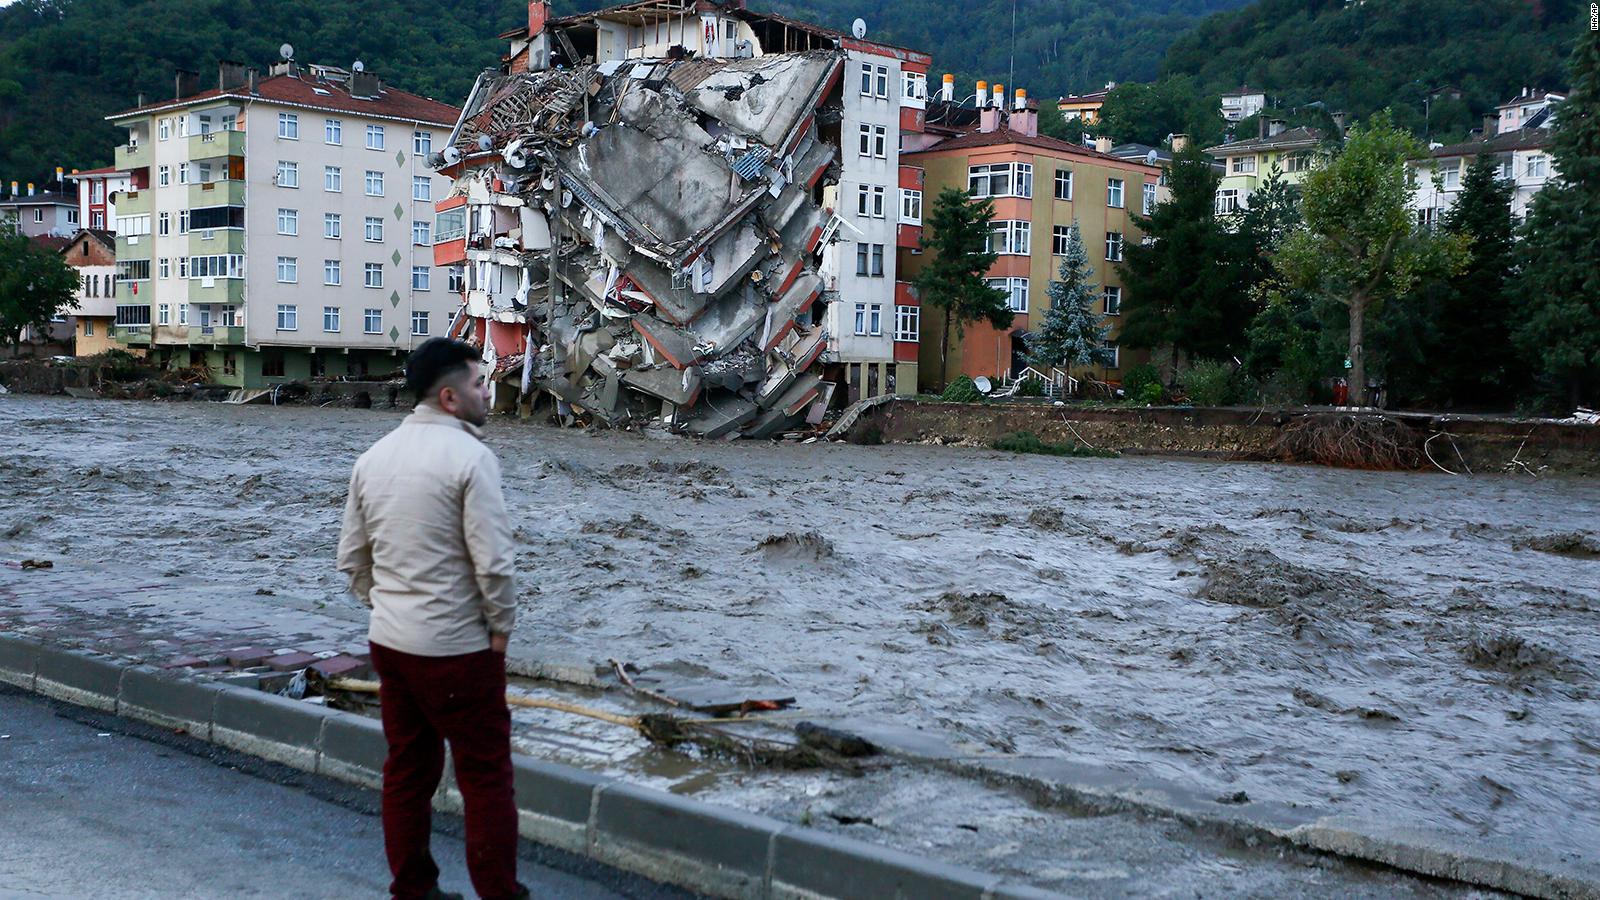 Turkey Flash floods sweep through Black Sea region killing 17 people CNN